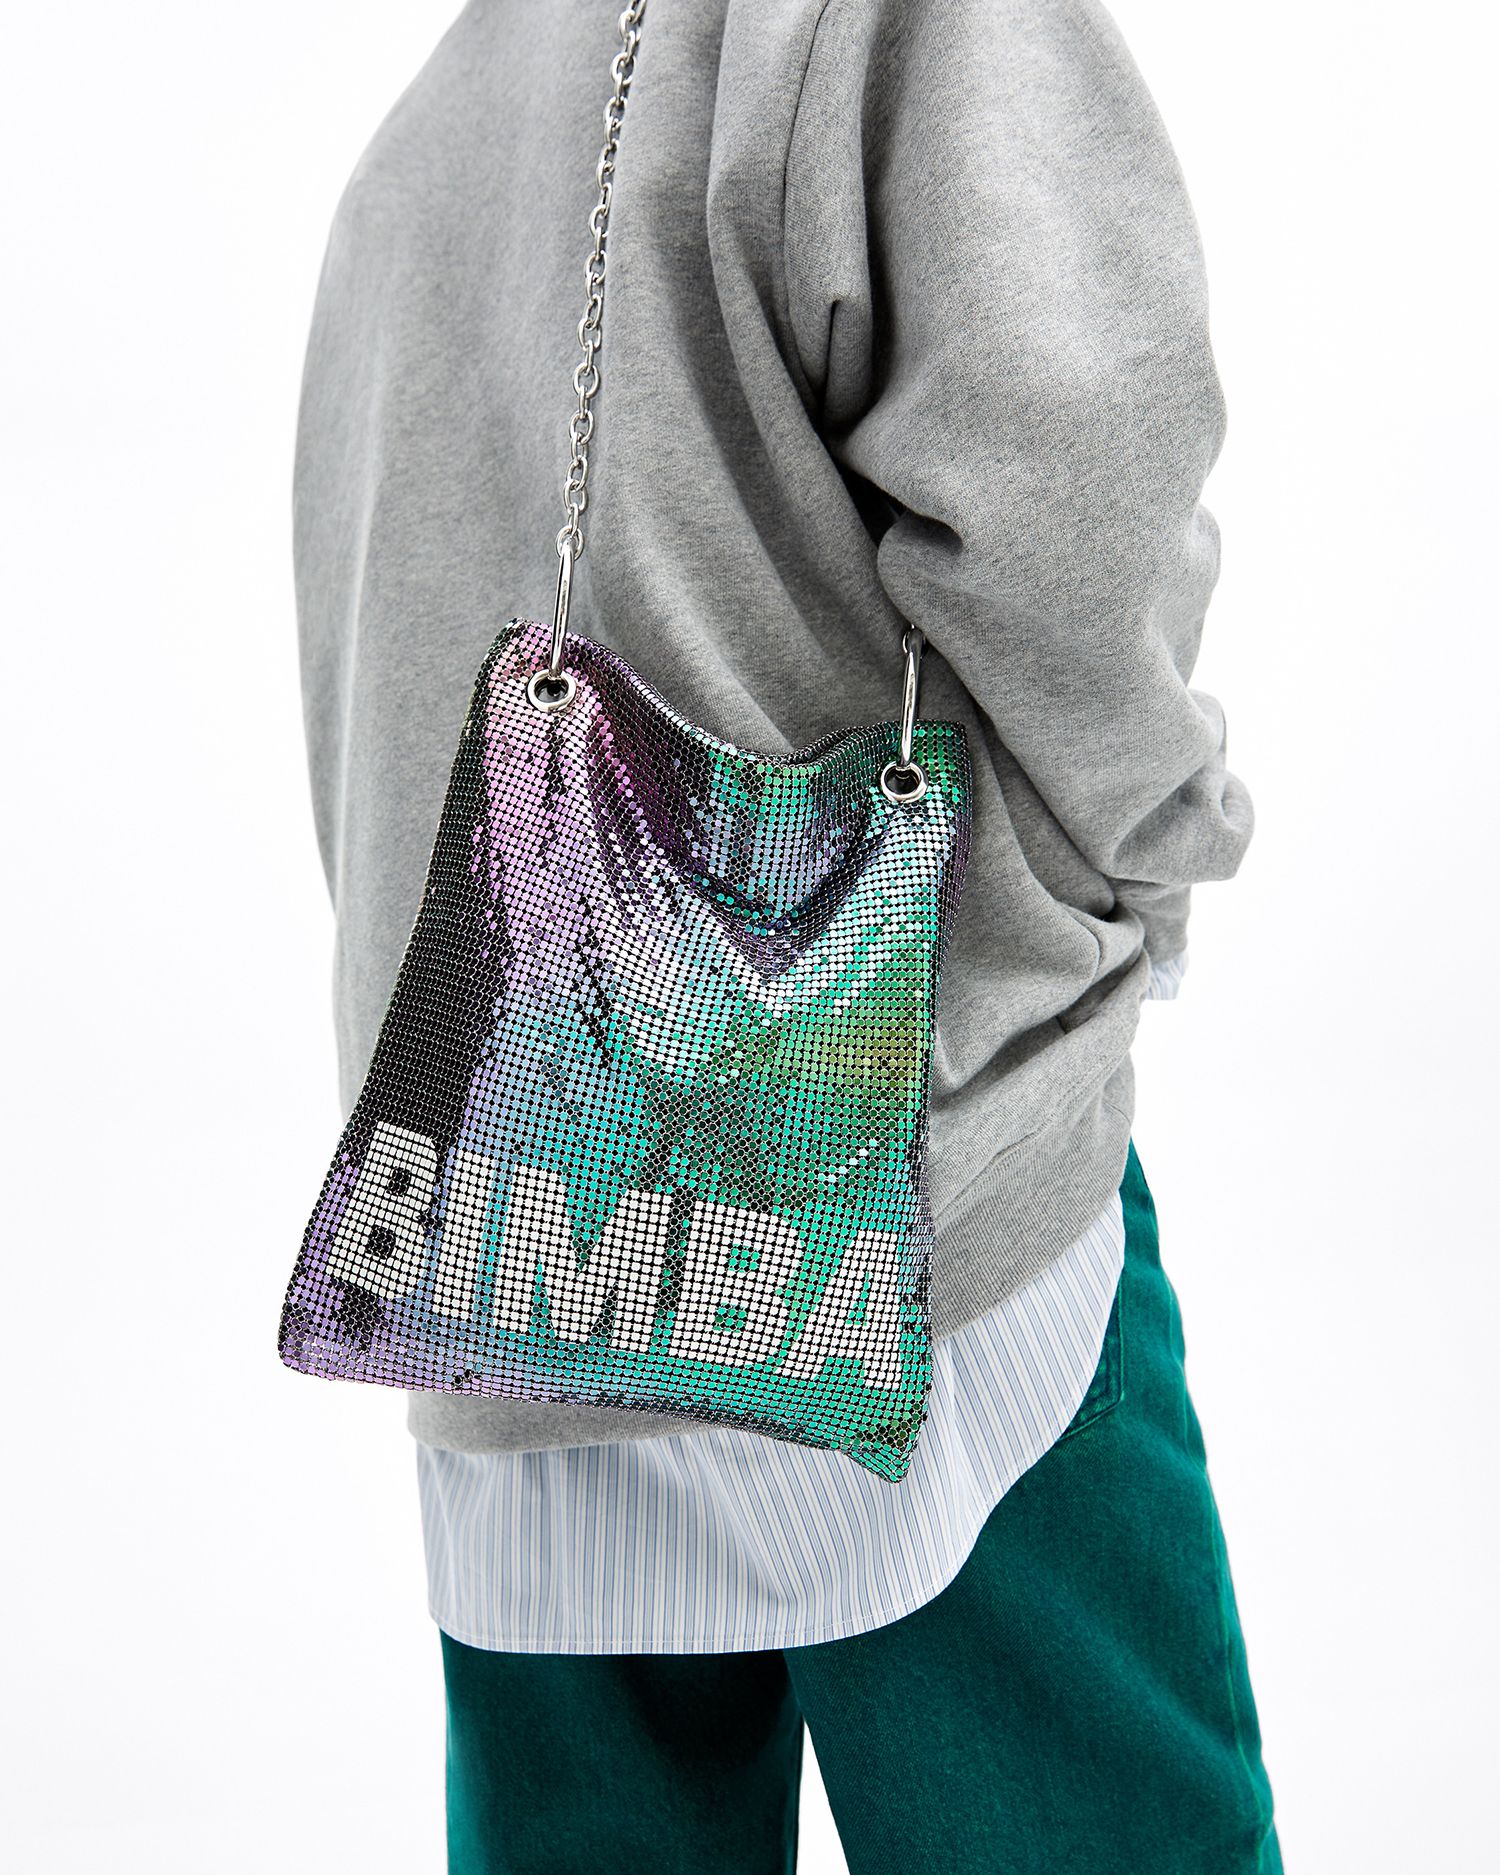 Los bolsos de Bimba y Lola que desearás estrenar esta primavera